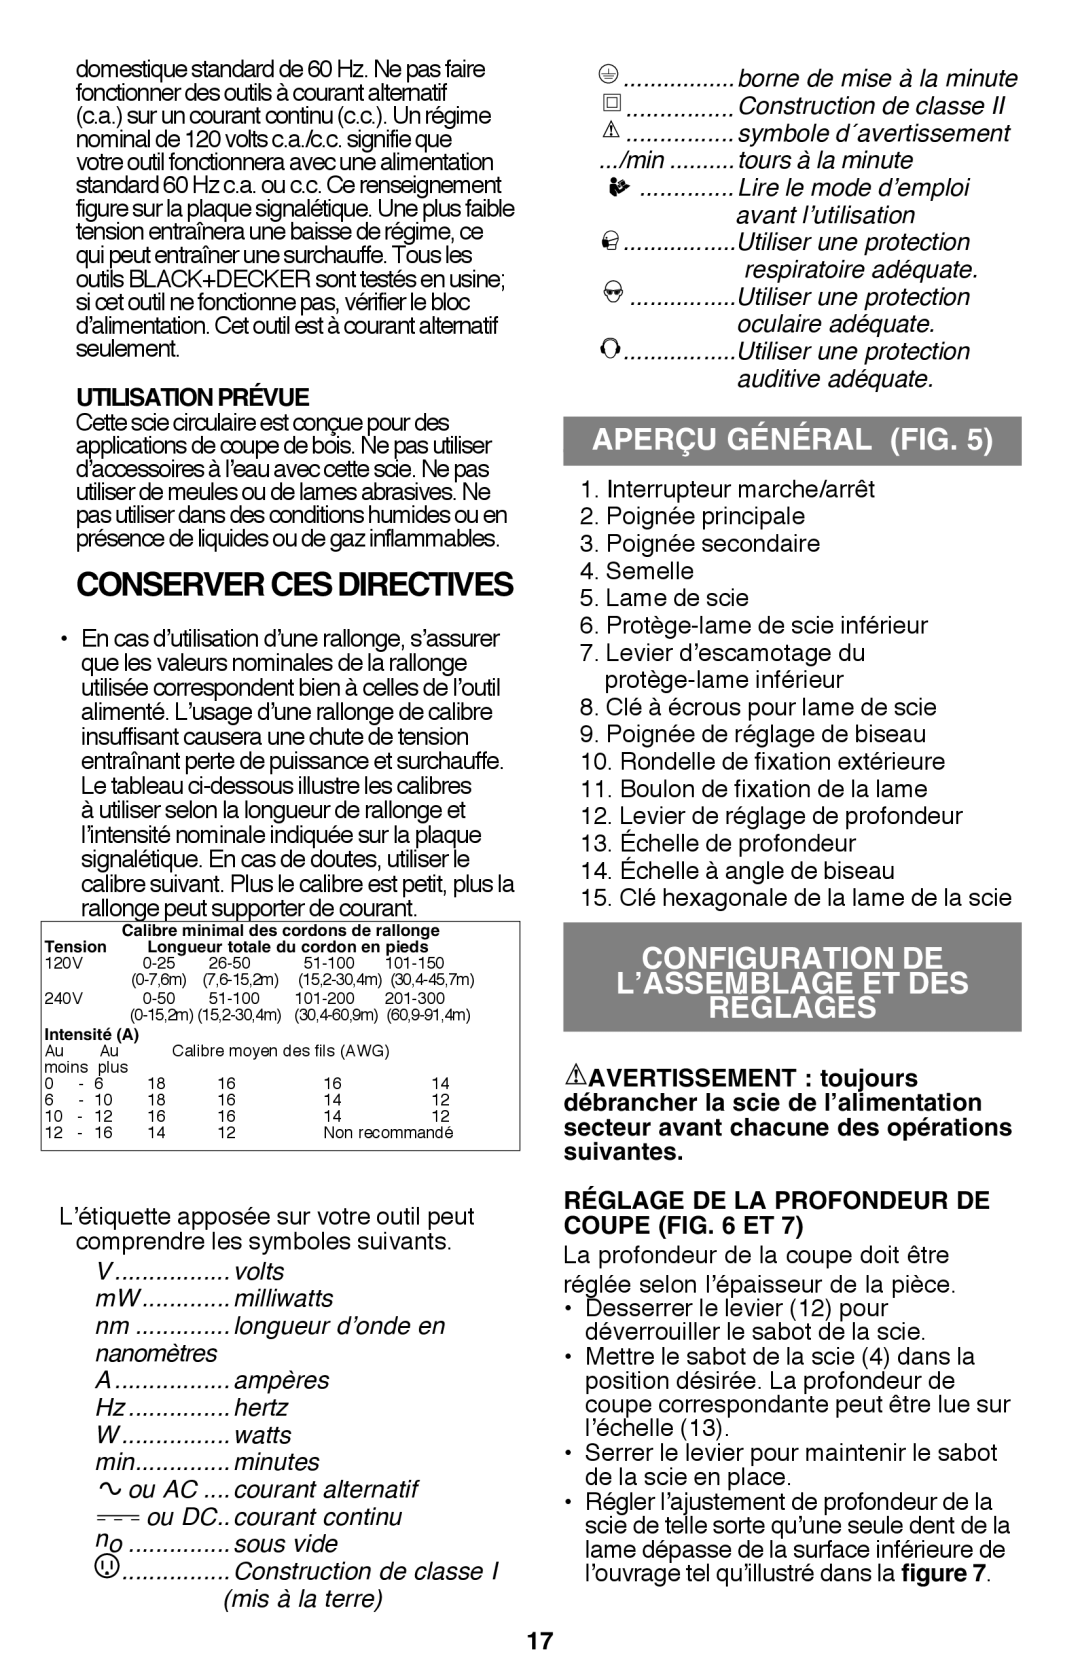 Black & Decker CS1015 Conserver Ces Directives, APERÇU GÉNÉRAL fig, Configuration de l’assemblage et des réglages 